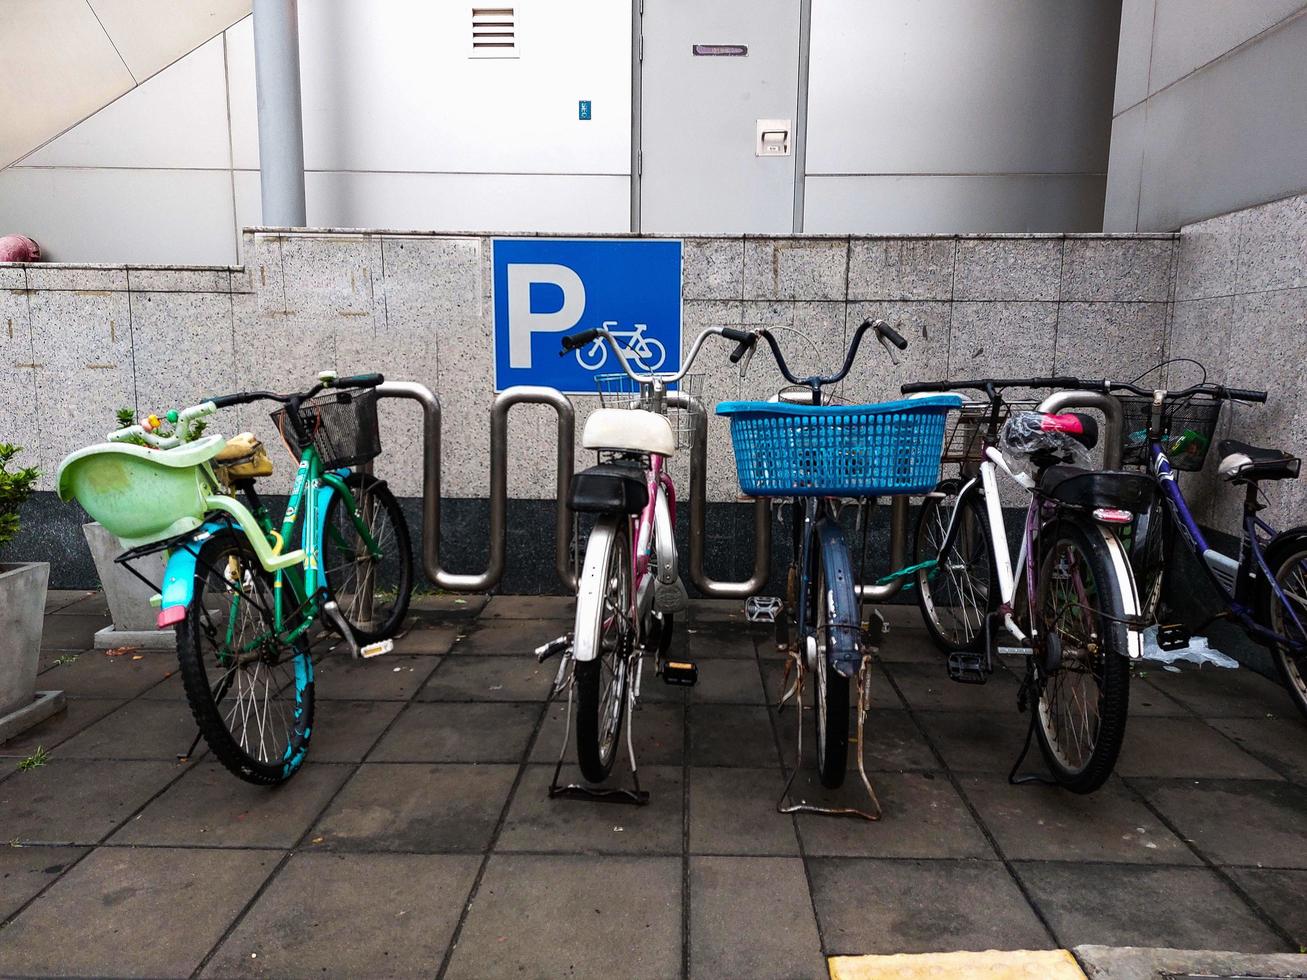 parcheggio per biciclette presso la stazione dei treni foto